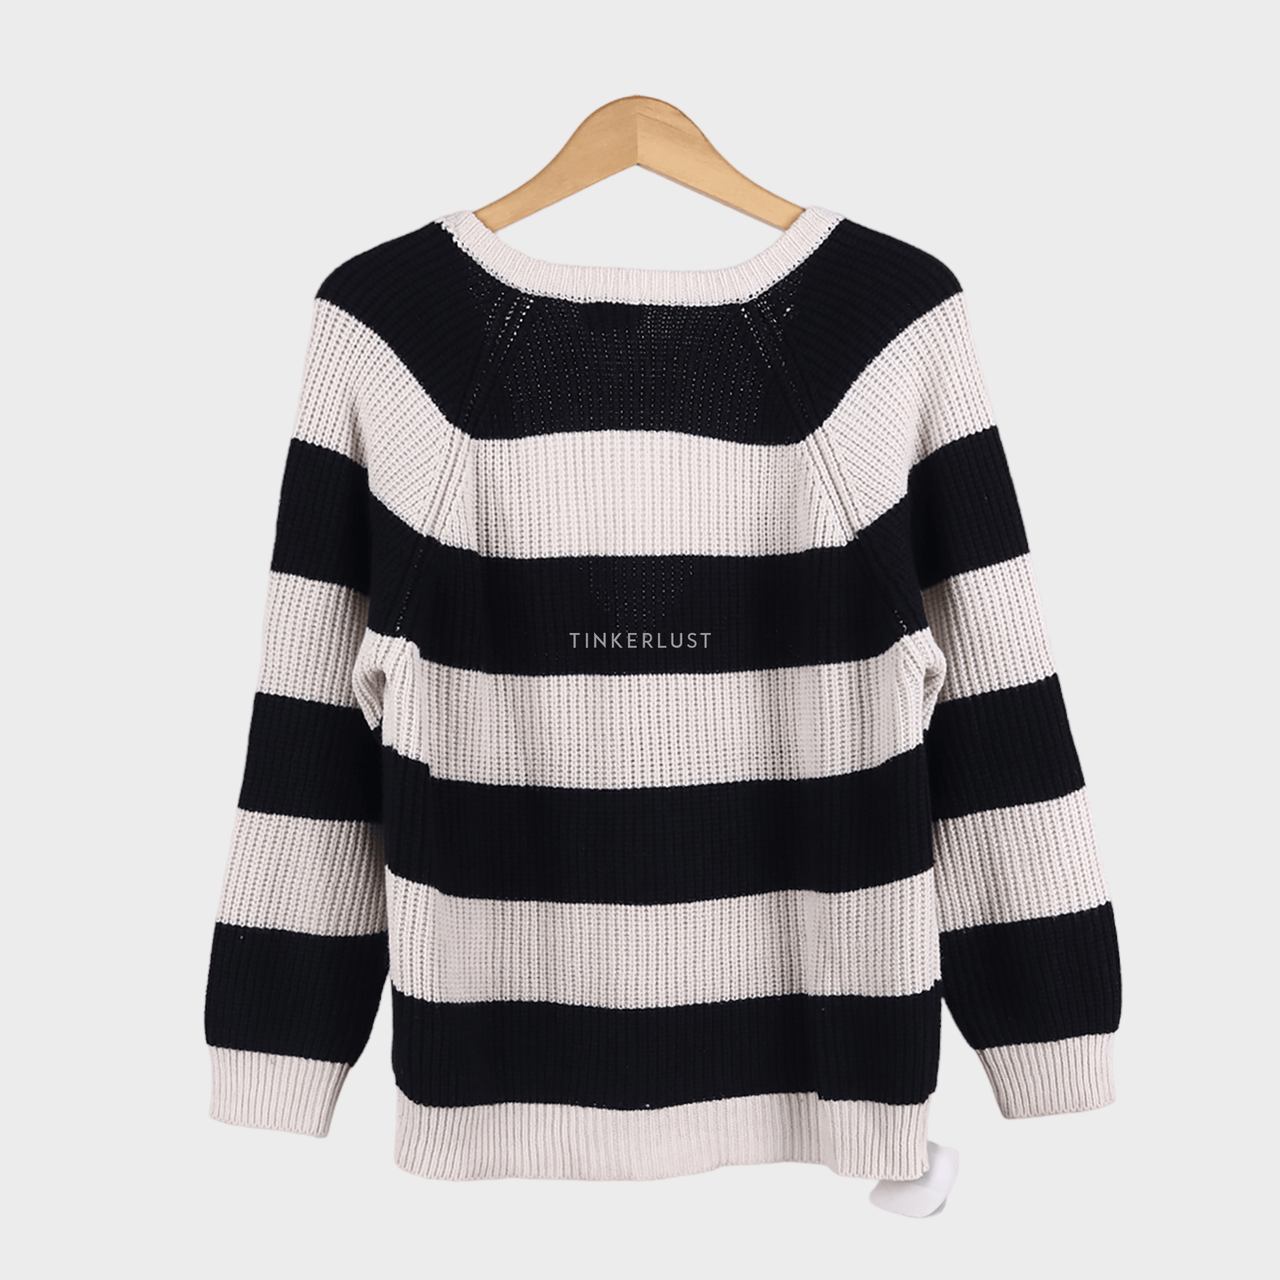 Private Collection Black & White Sweater